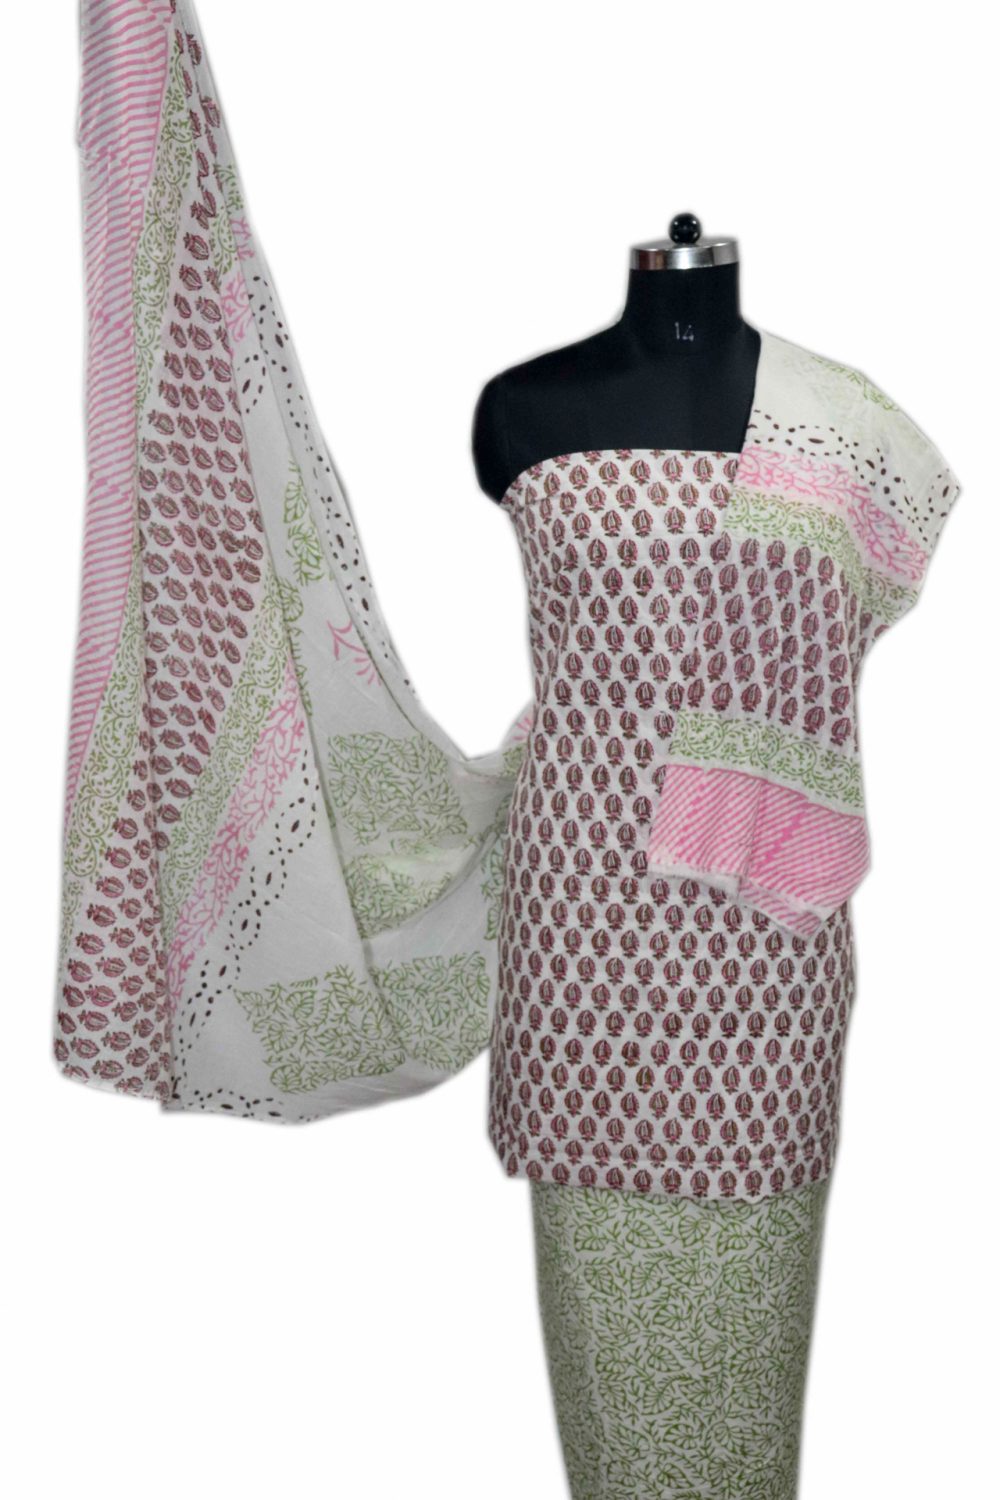 Floral Block Print Salwar suits with Mulmul Dupatta - JB309